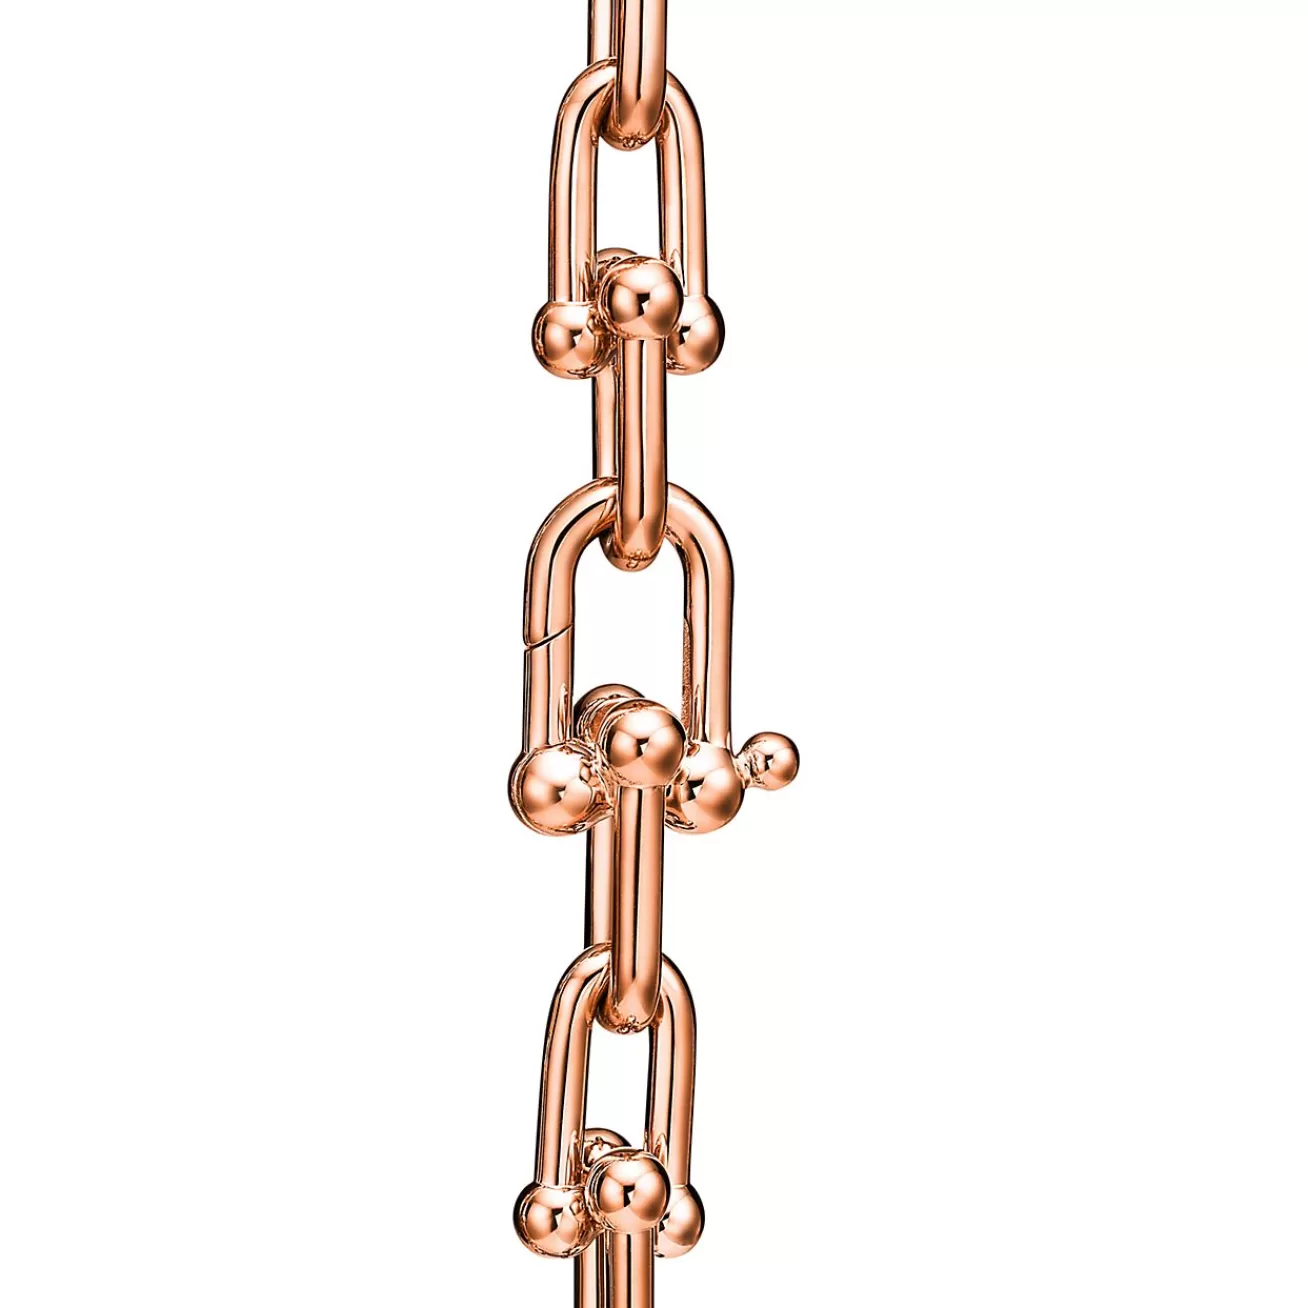 Tiffany & Co. Tiffany HardWear Medium Link Bracelet in Rose Gold | ^ Bracelets | Men's Jewelry